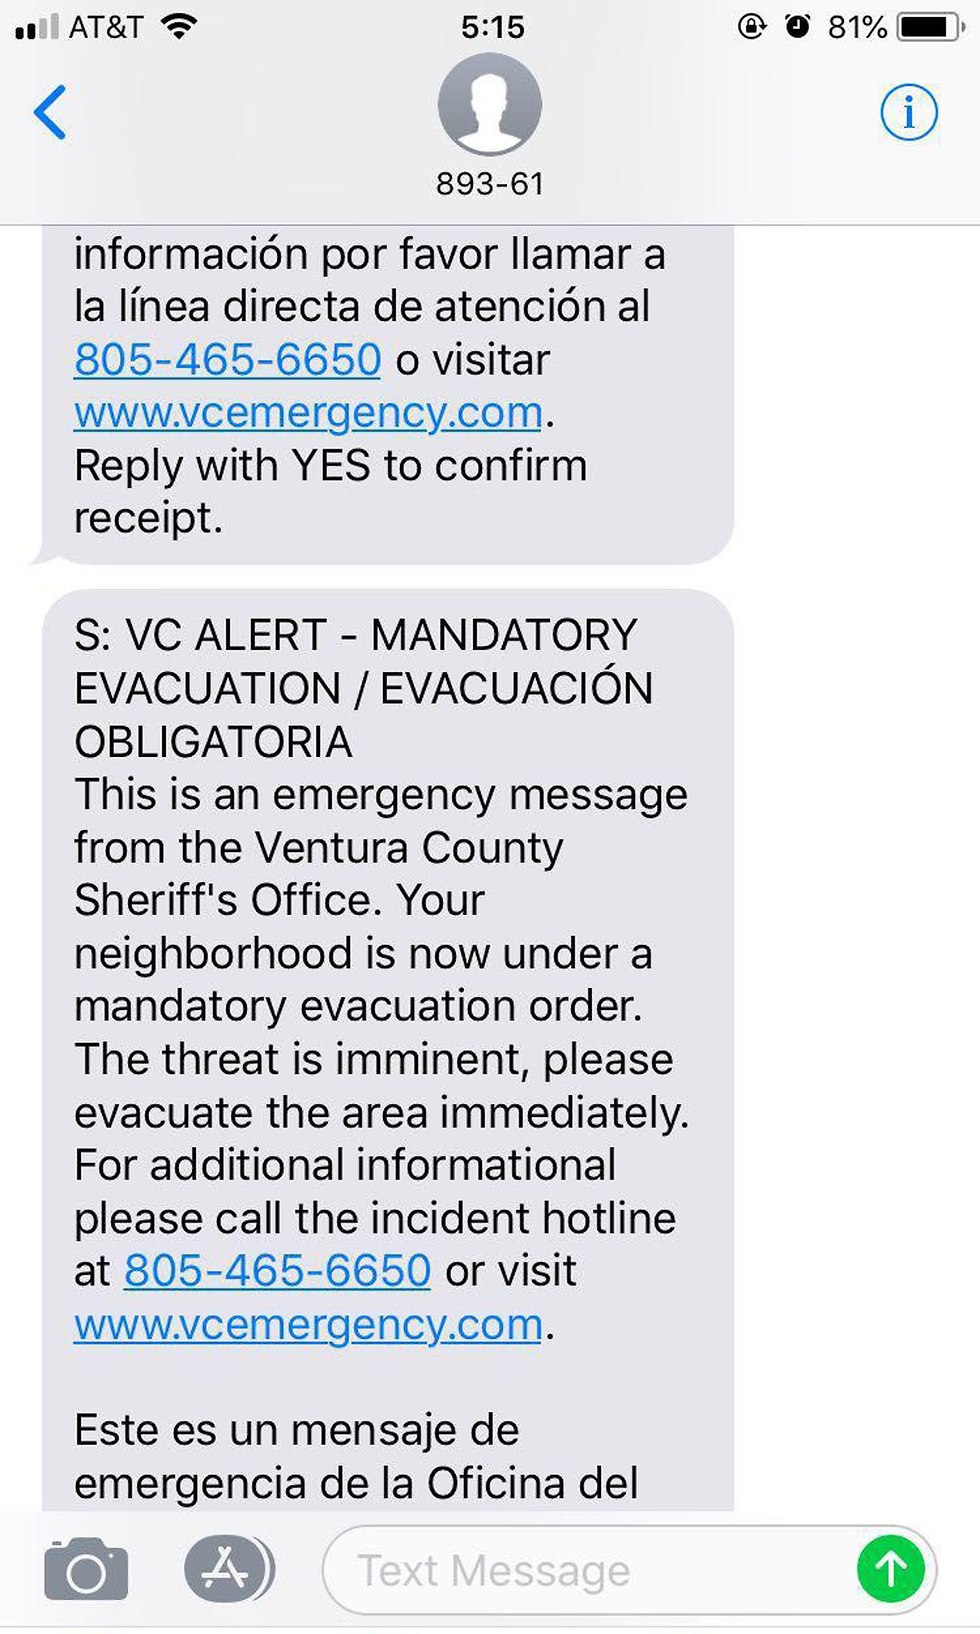 הודעה הודעת פינוי תושבים שריפה שריפת ענק  ב קליפורניה משרד ה שריף ארה